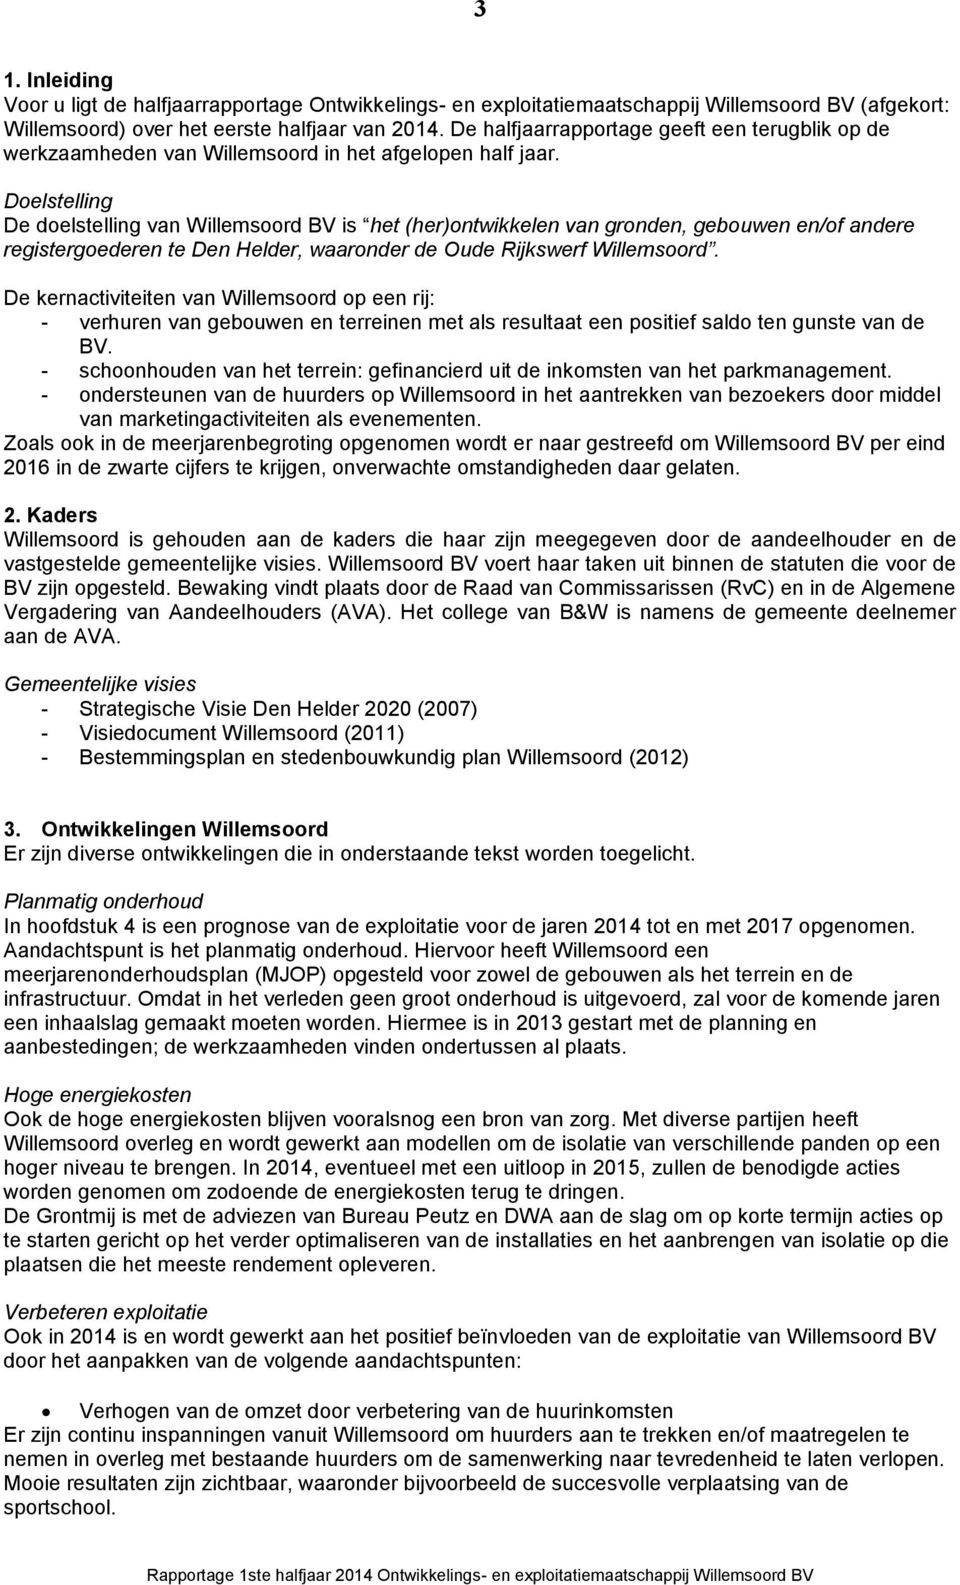 Doelstelling De doelstelling van Willemsoord BV is het (her)ontwikkelen van gronden, en/of andere registergoederen te Den Helder, waaronder de Oude Rijkswerf Willemsoord.